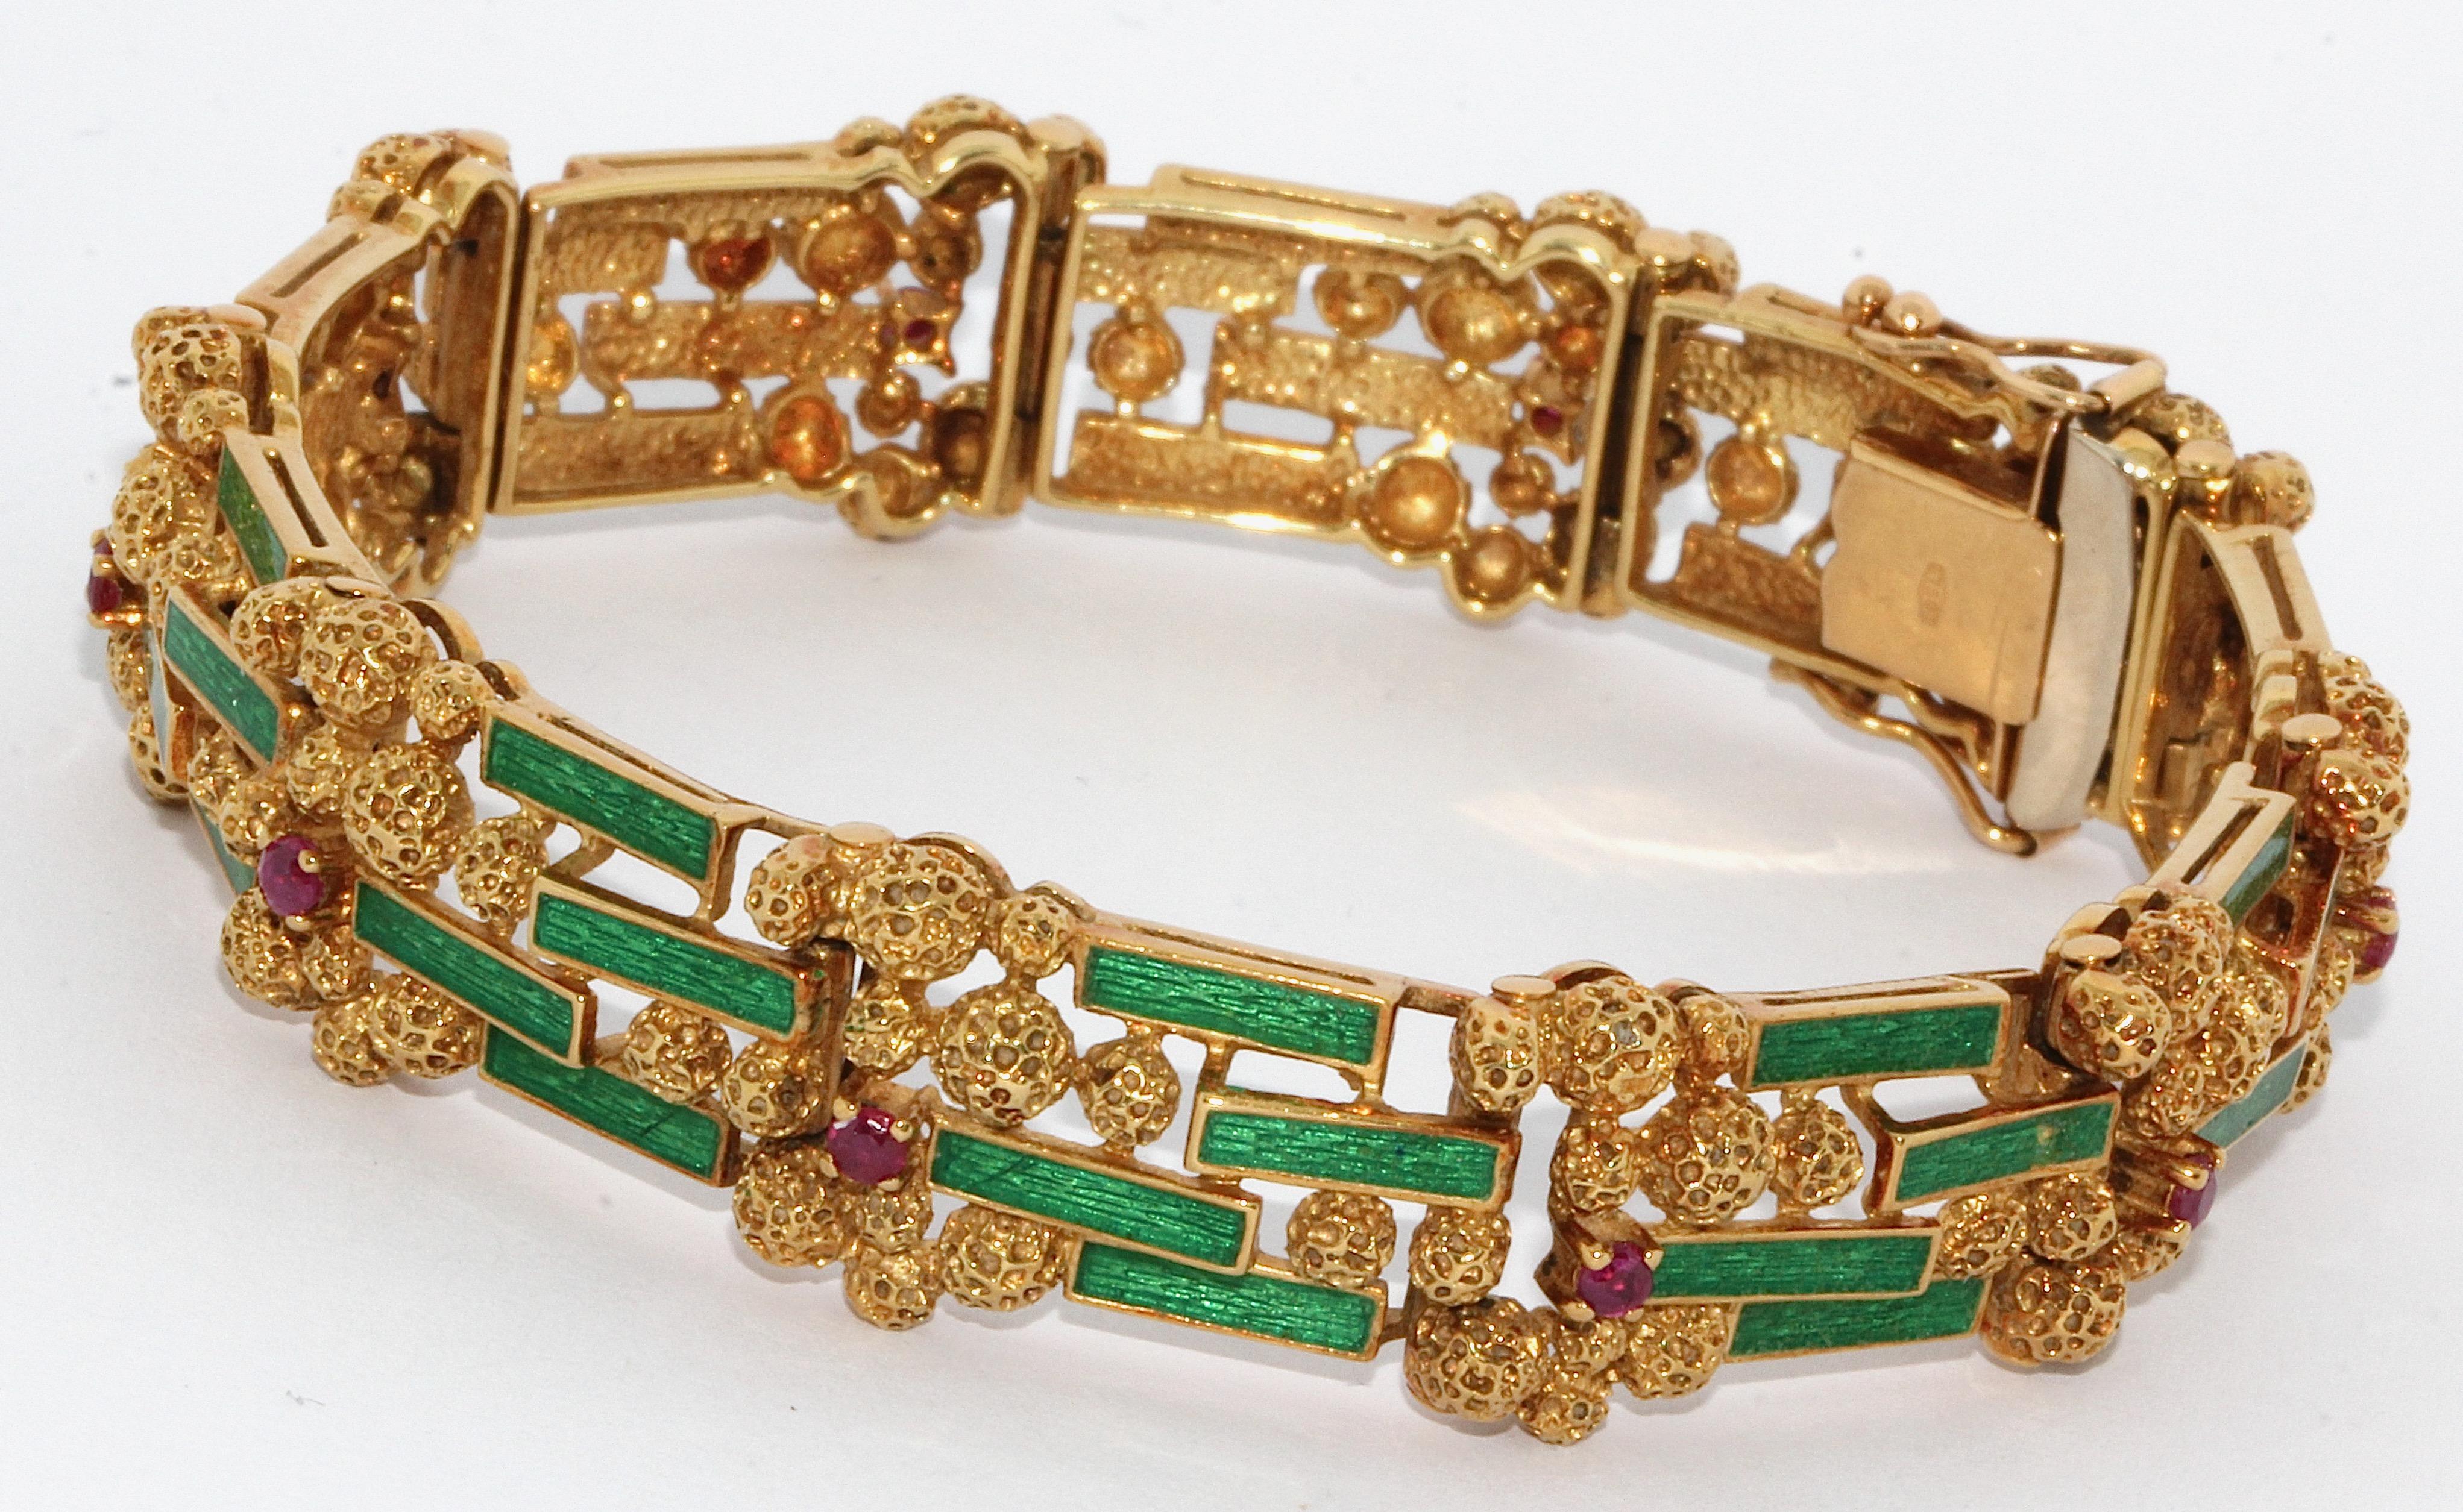 Bracelet en or pour femme, 18 carats, serti d'émail vert et de rubis.

Certificat d'authenticité inclus.